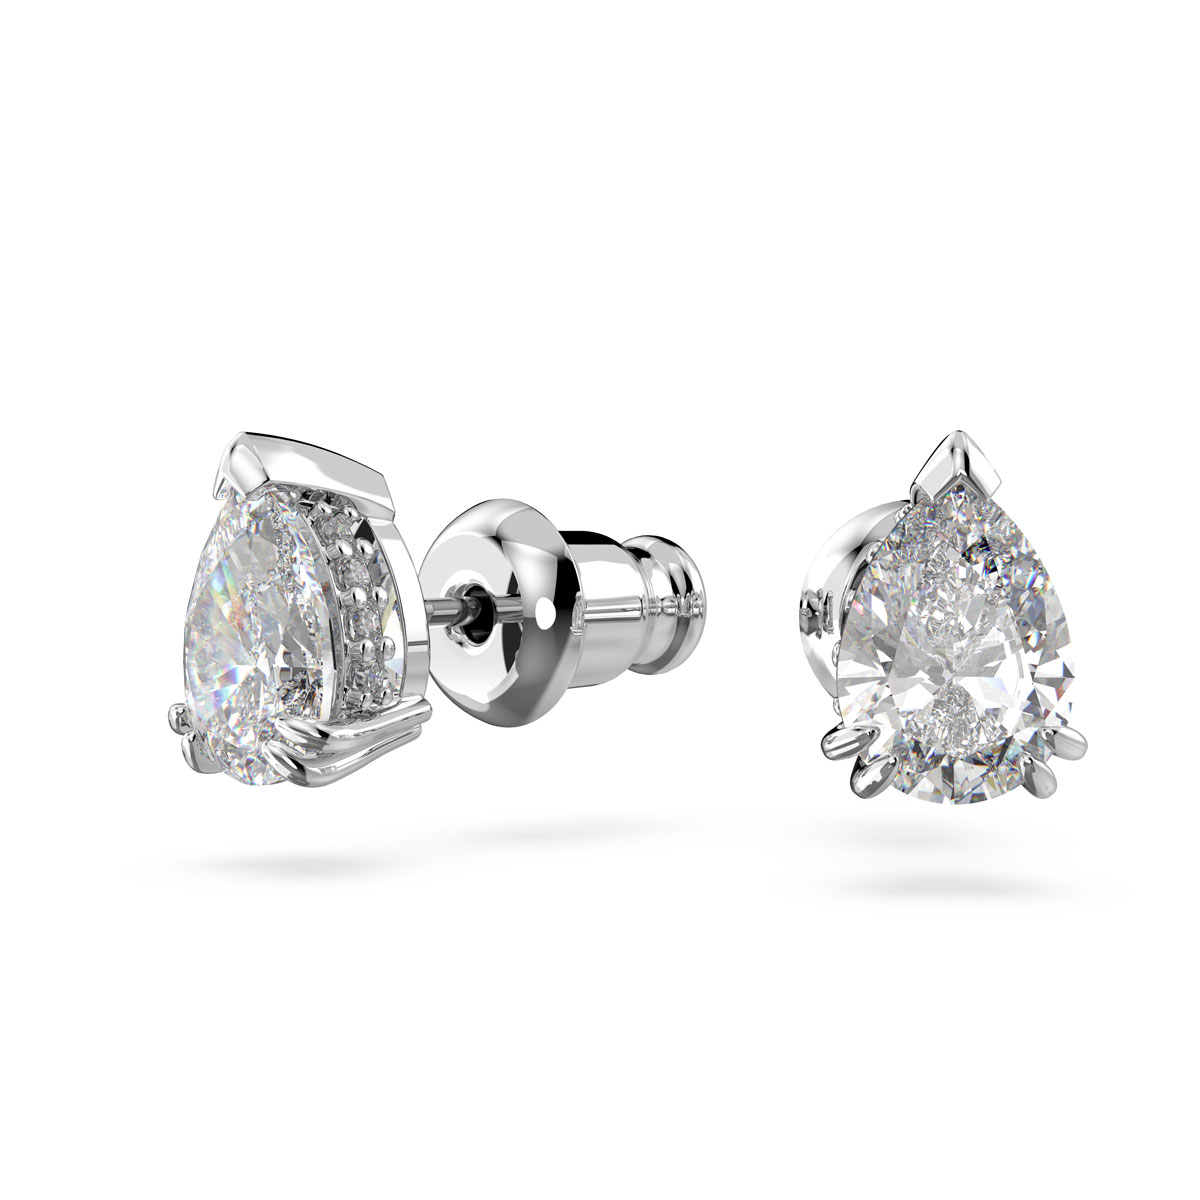 Swarovski Constella Pear Crystal and Rhodium Pierced Earrings